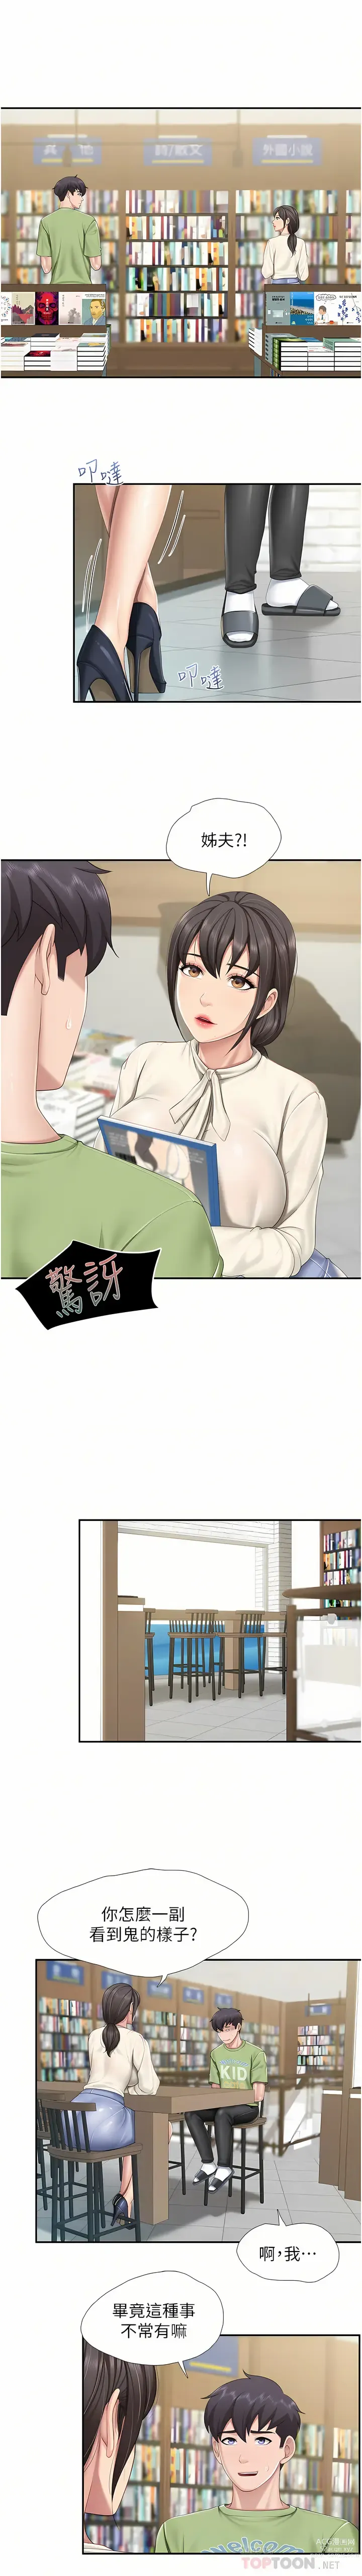 Page 5 of manga 亲子餐厅的妈妈们 51-103